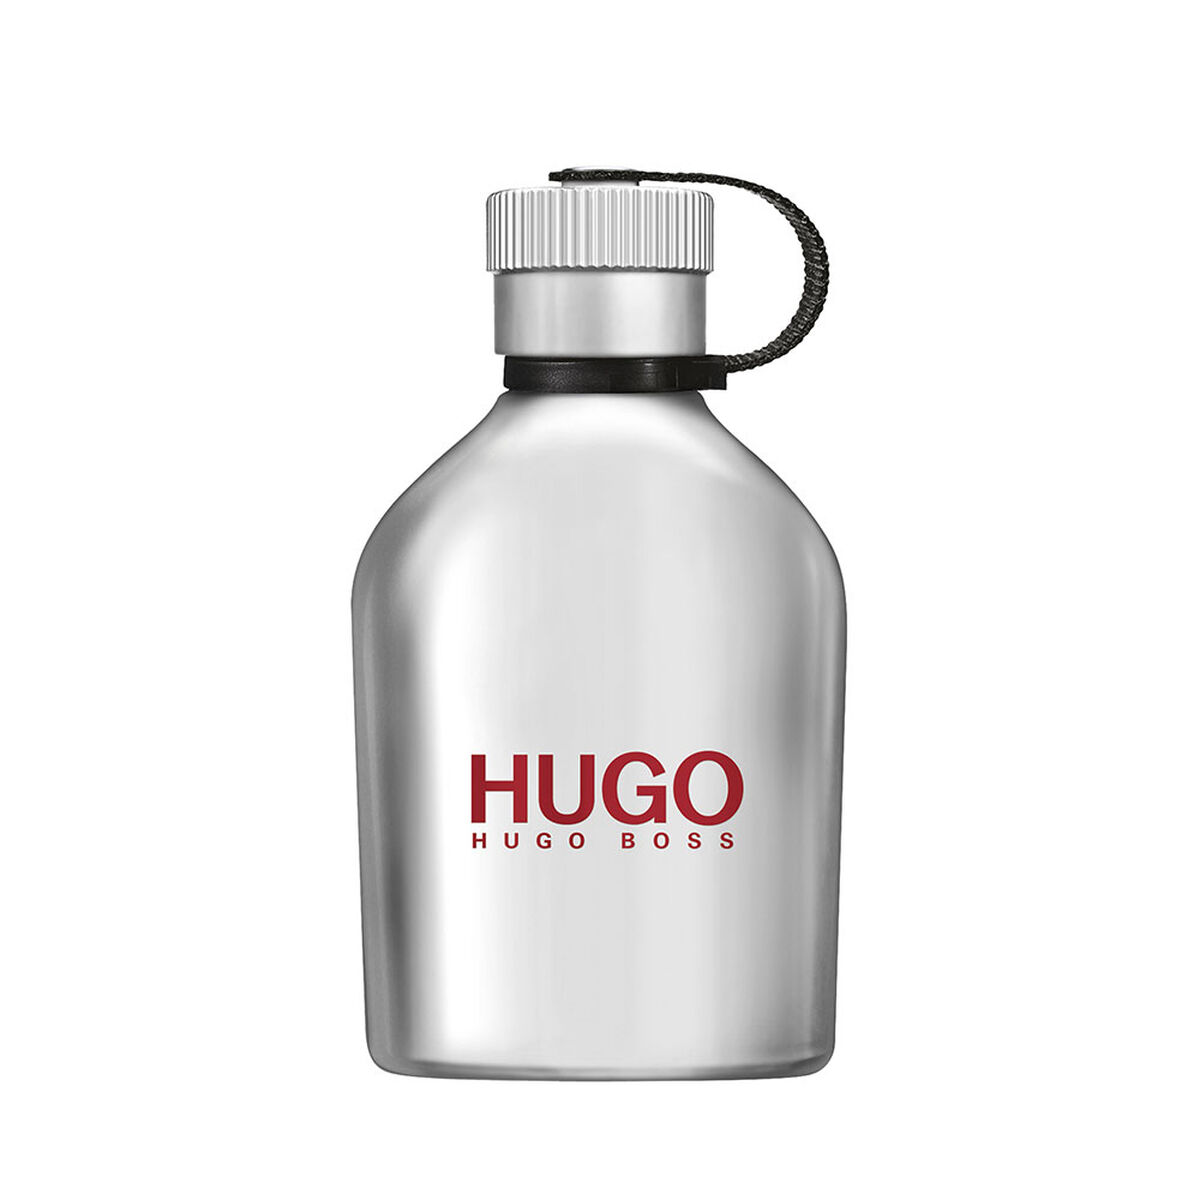 Hugo Iced EDT 125 ml